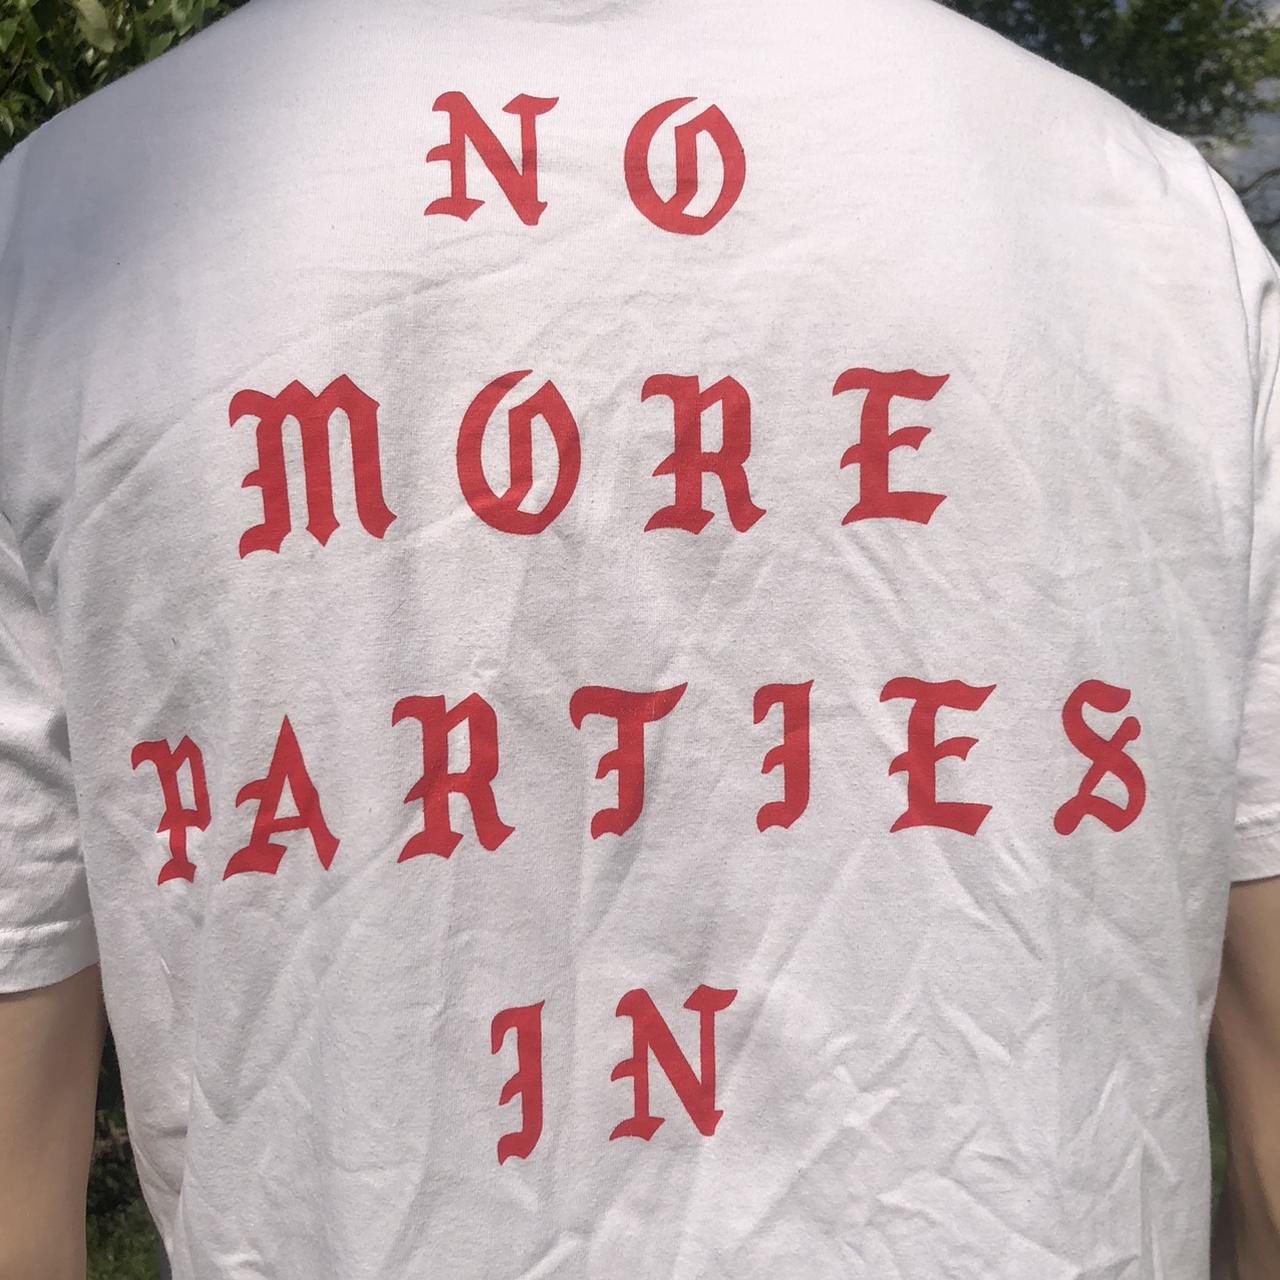 No More Parties In LA 